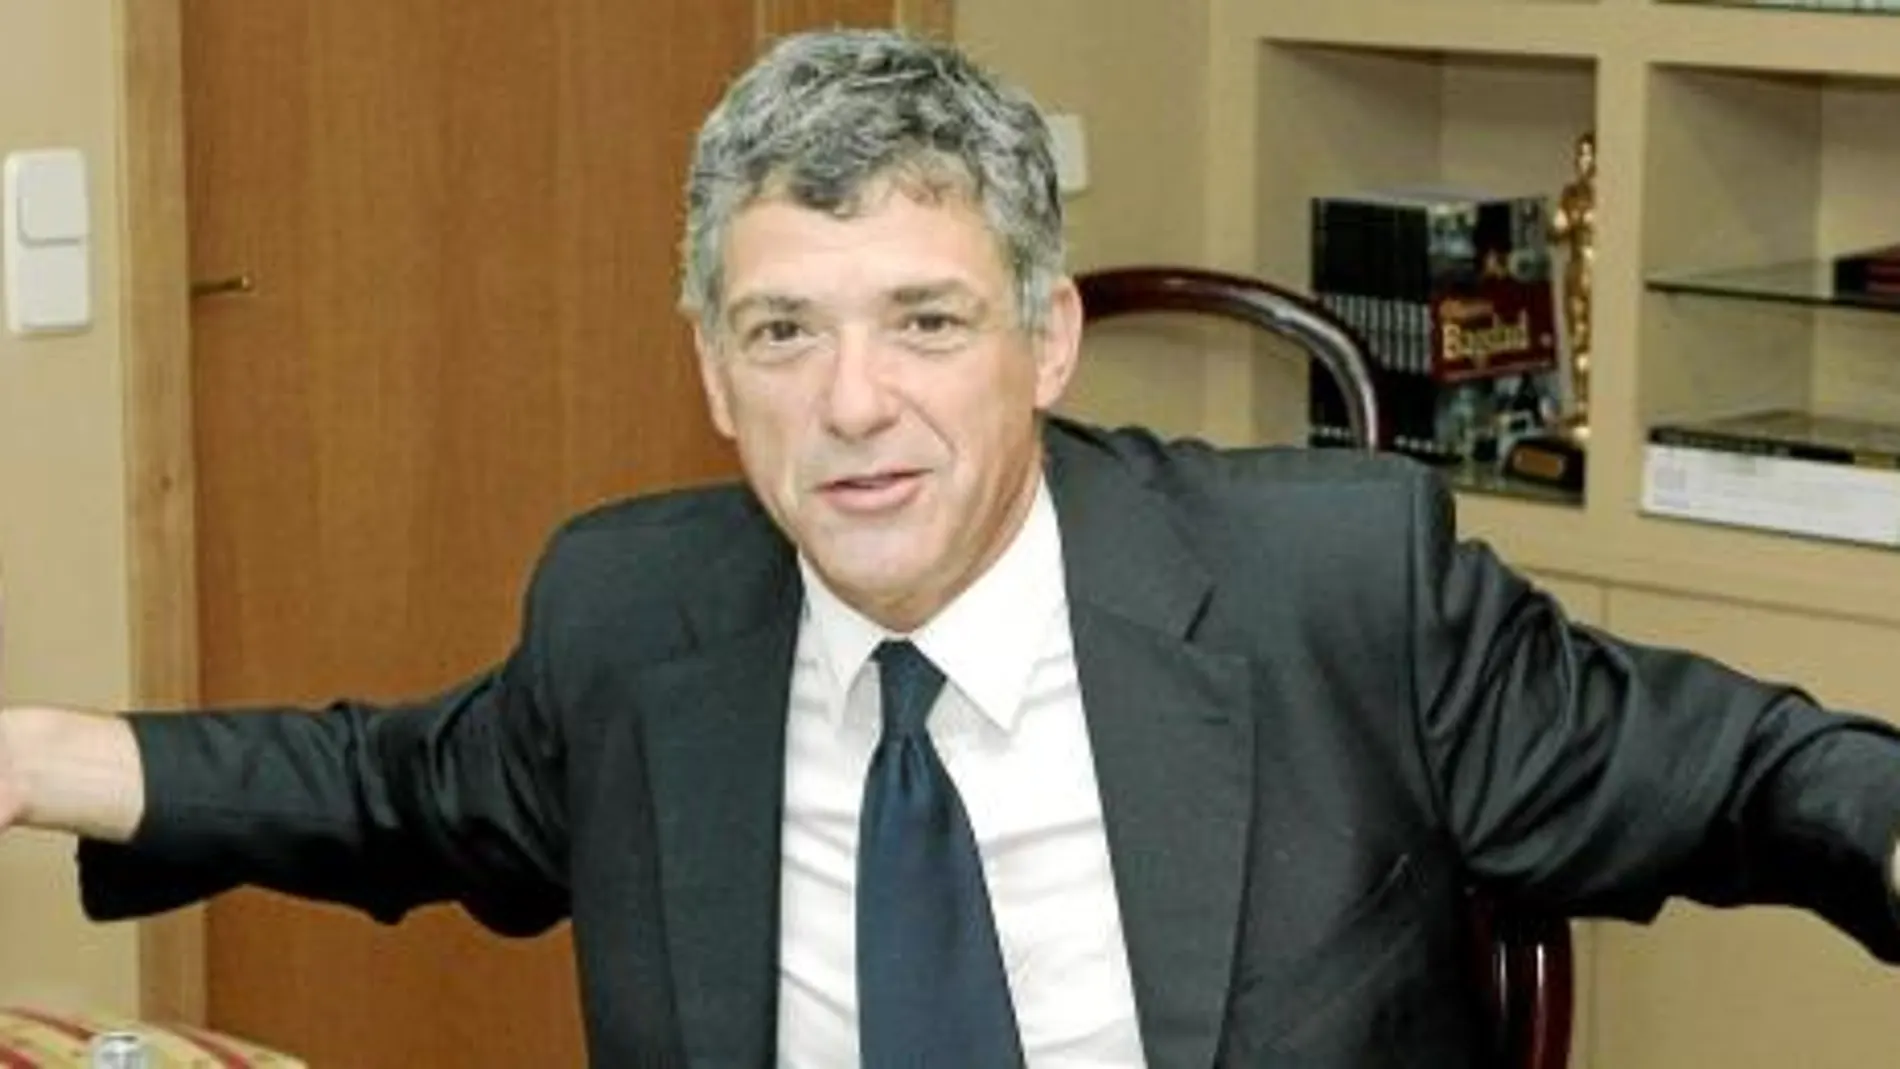 El expresidente de la Federación Española de Fúbol Ángel María Villar